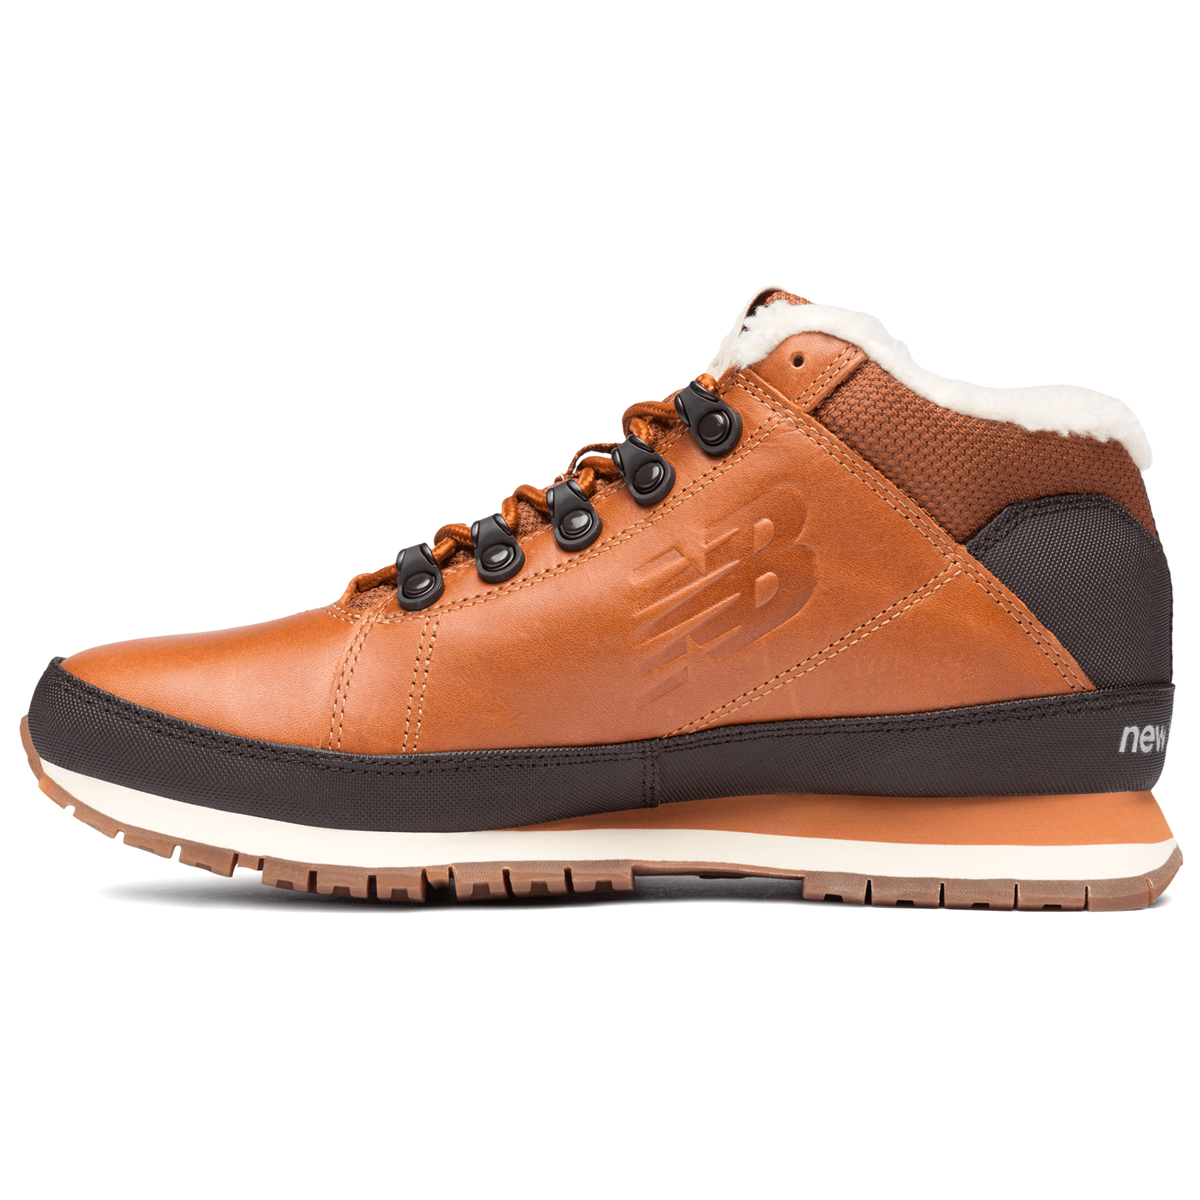 New męskie buty zimowe ze skóry naturalnej H754LFT ocieplane H754LFT OBUWIE MĘSKIE \ NEW BALANCE OUTLET NEW BALANCE \ OBUWIE MĘSKIE NB 399,99 zł